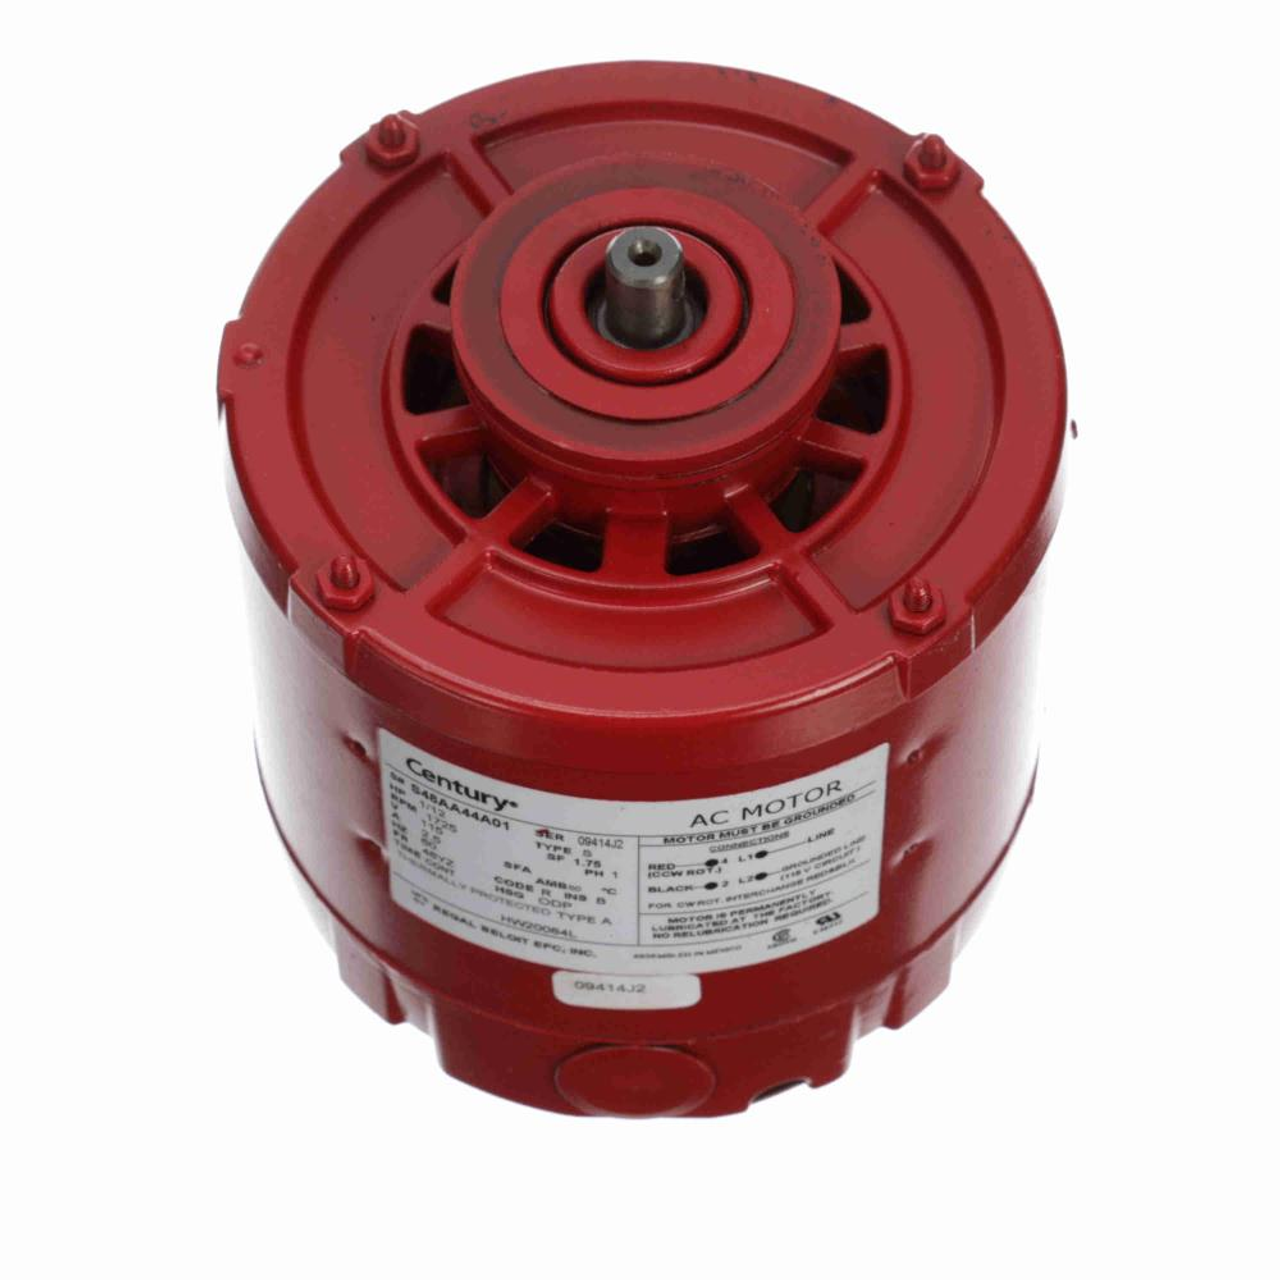 HW20084L Hot Water Circulator Pump Motor 1/12 HP